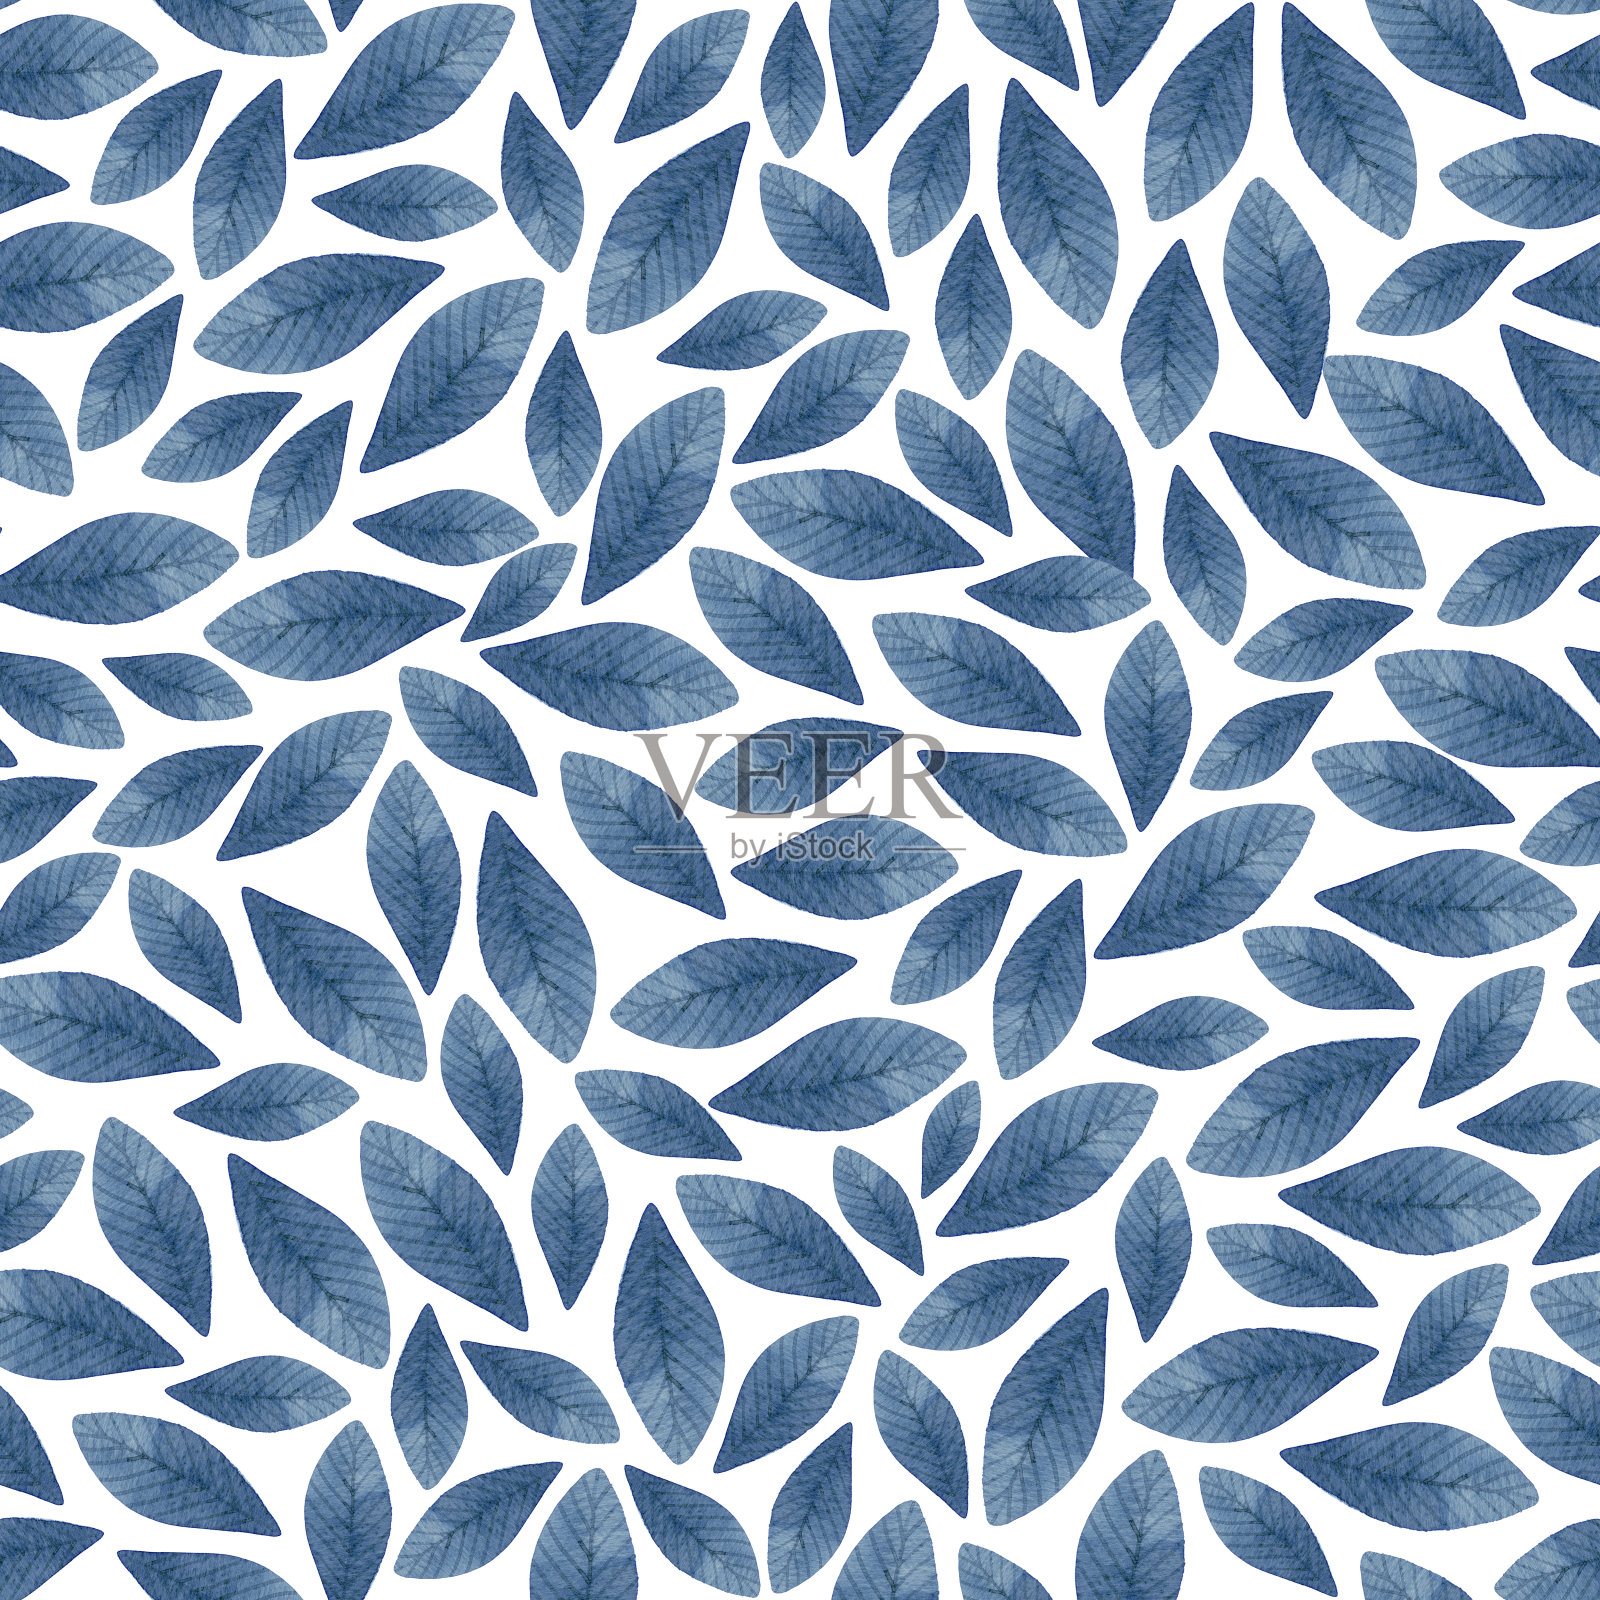 蓝色的叶子用水彩绘成简单的无缝图案插画图片素材